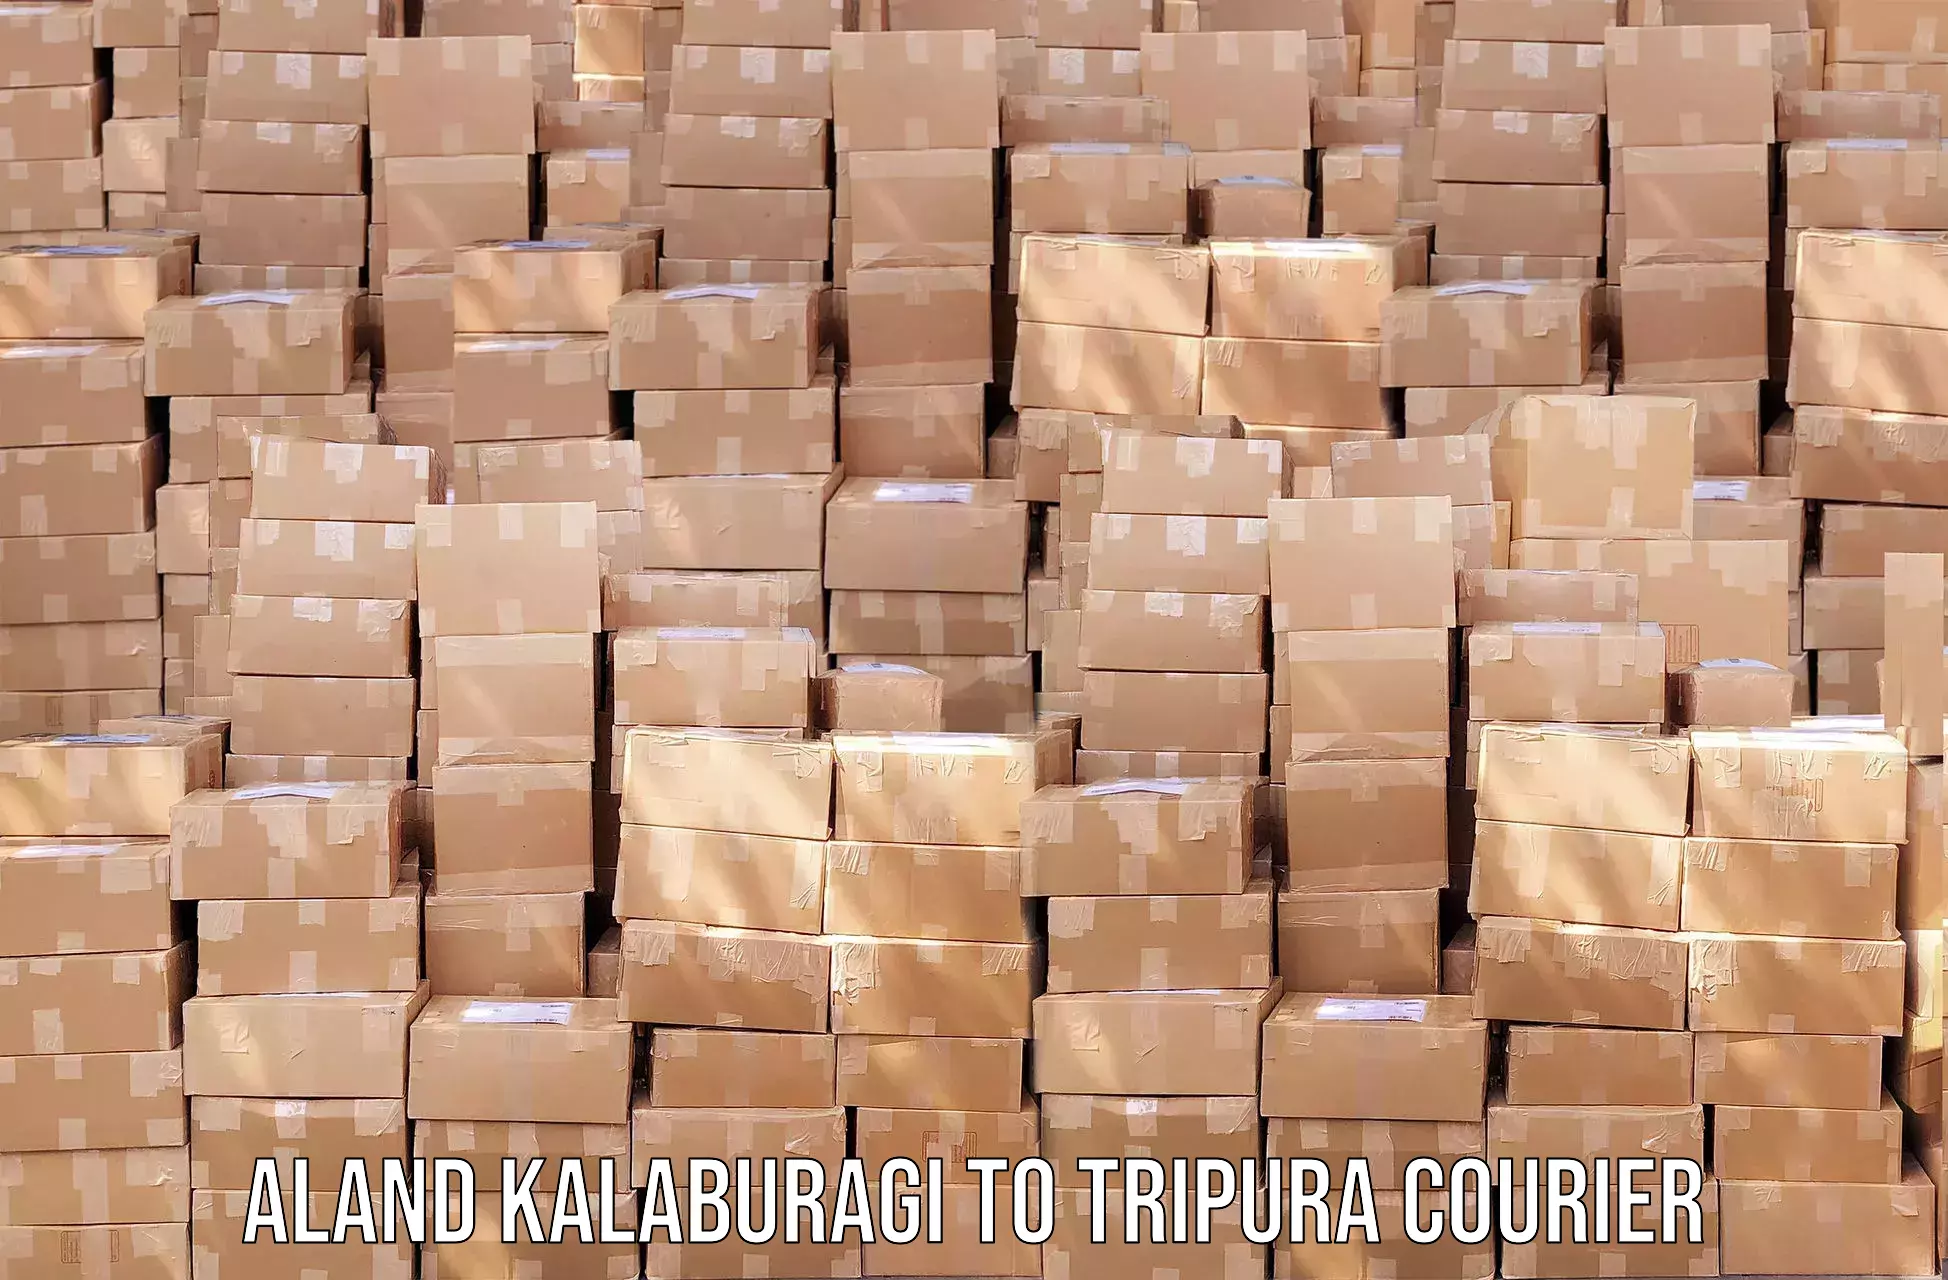 End-to-end delivery Aland Kalaburagi to Tripura